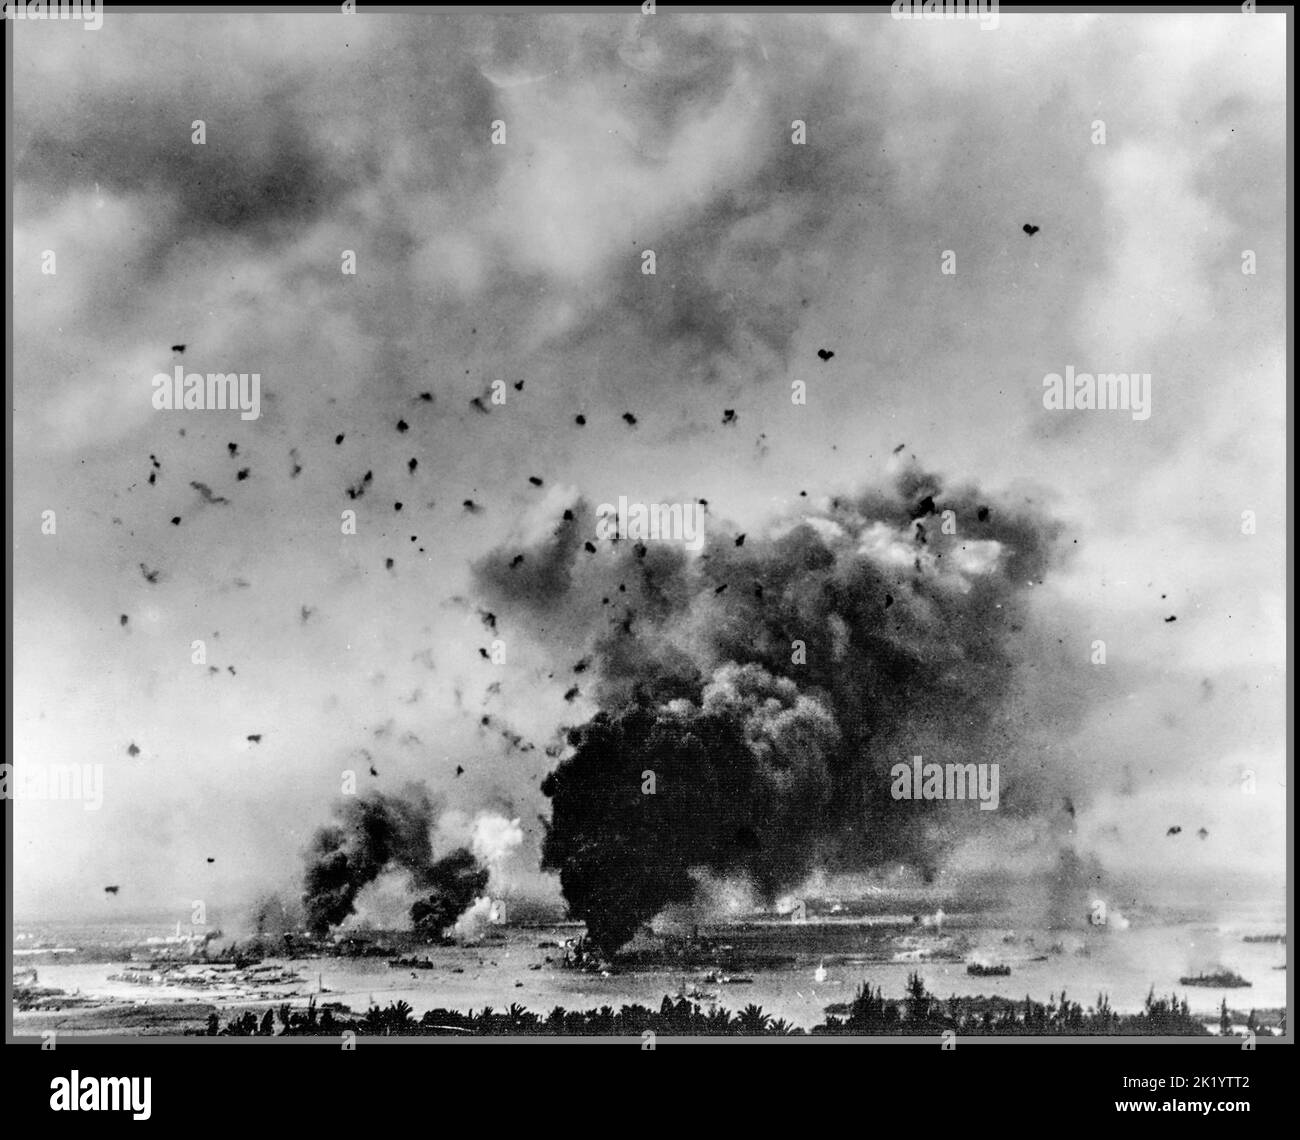 ANGRIFF AUF PEARL HARBOR Gesamtansicht des japanischen Überraschungsangriffs mit amerikanischen Schlachtschiffen, die während der berüchtigten japanischen Offensive am 7.. Dezember 1941 in Pearl Harbor getroffen und verbrannt wurden, während ein Luftabwehrfeuer den Himmel füllte. Stockfoto